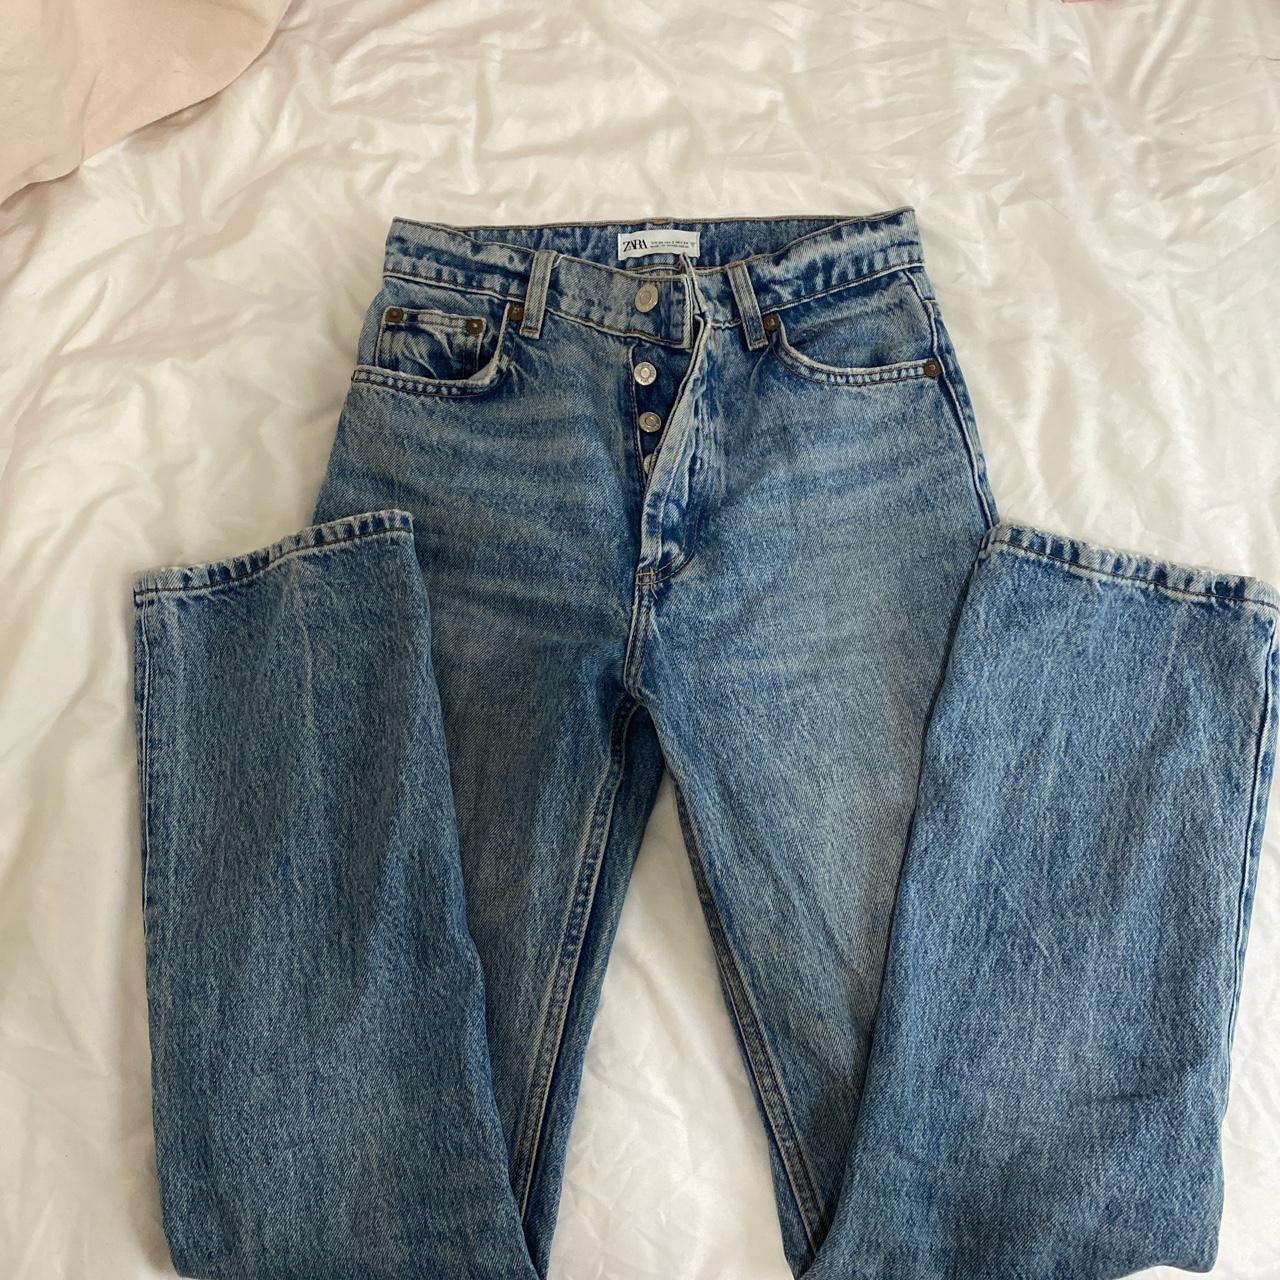 Zara wide leg ish jeans - Depop